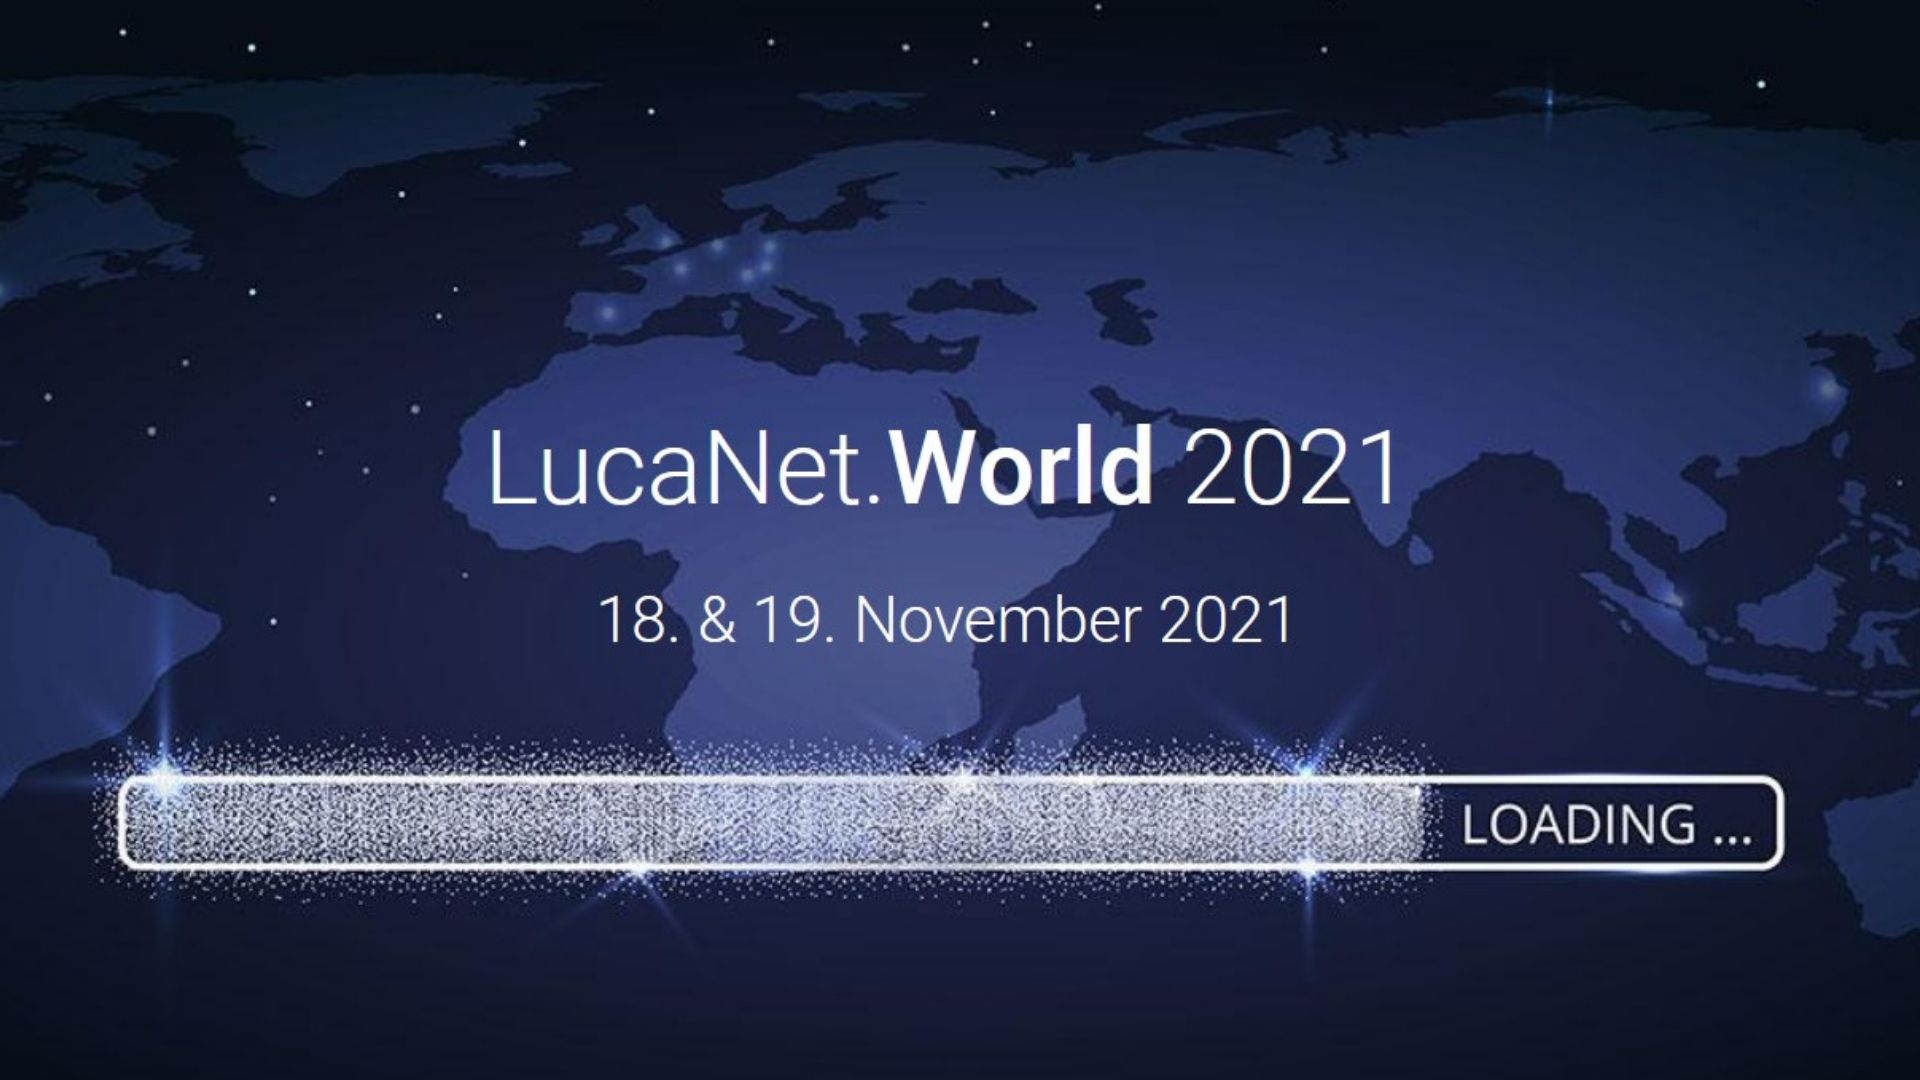 LucaNet.World 2021